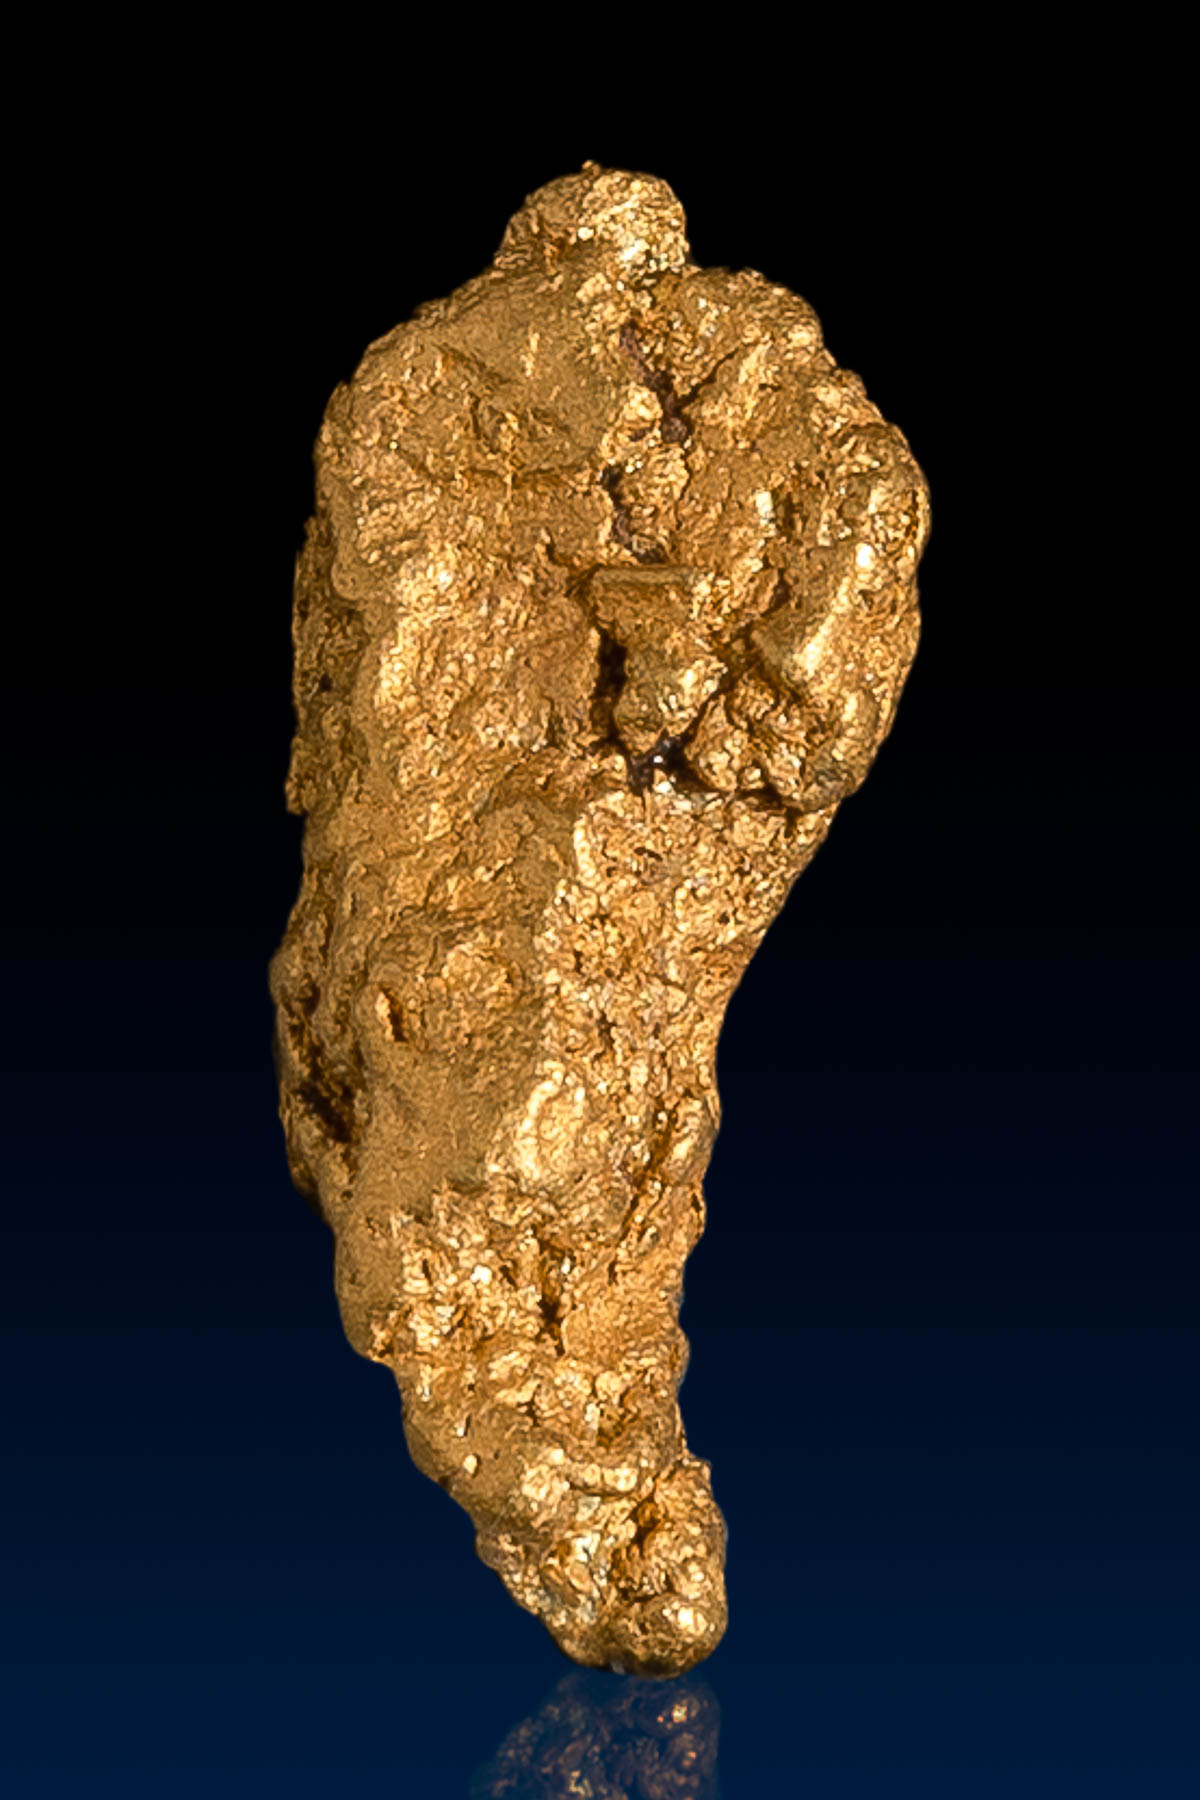 Chili Shaped Arizona Natural Gold Nugget - 1.87 grams